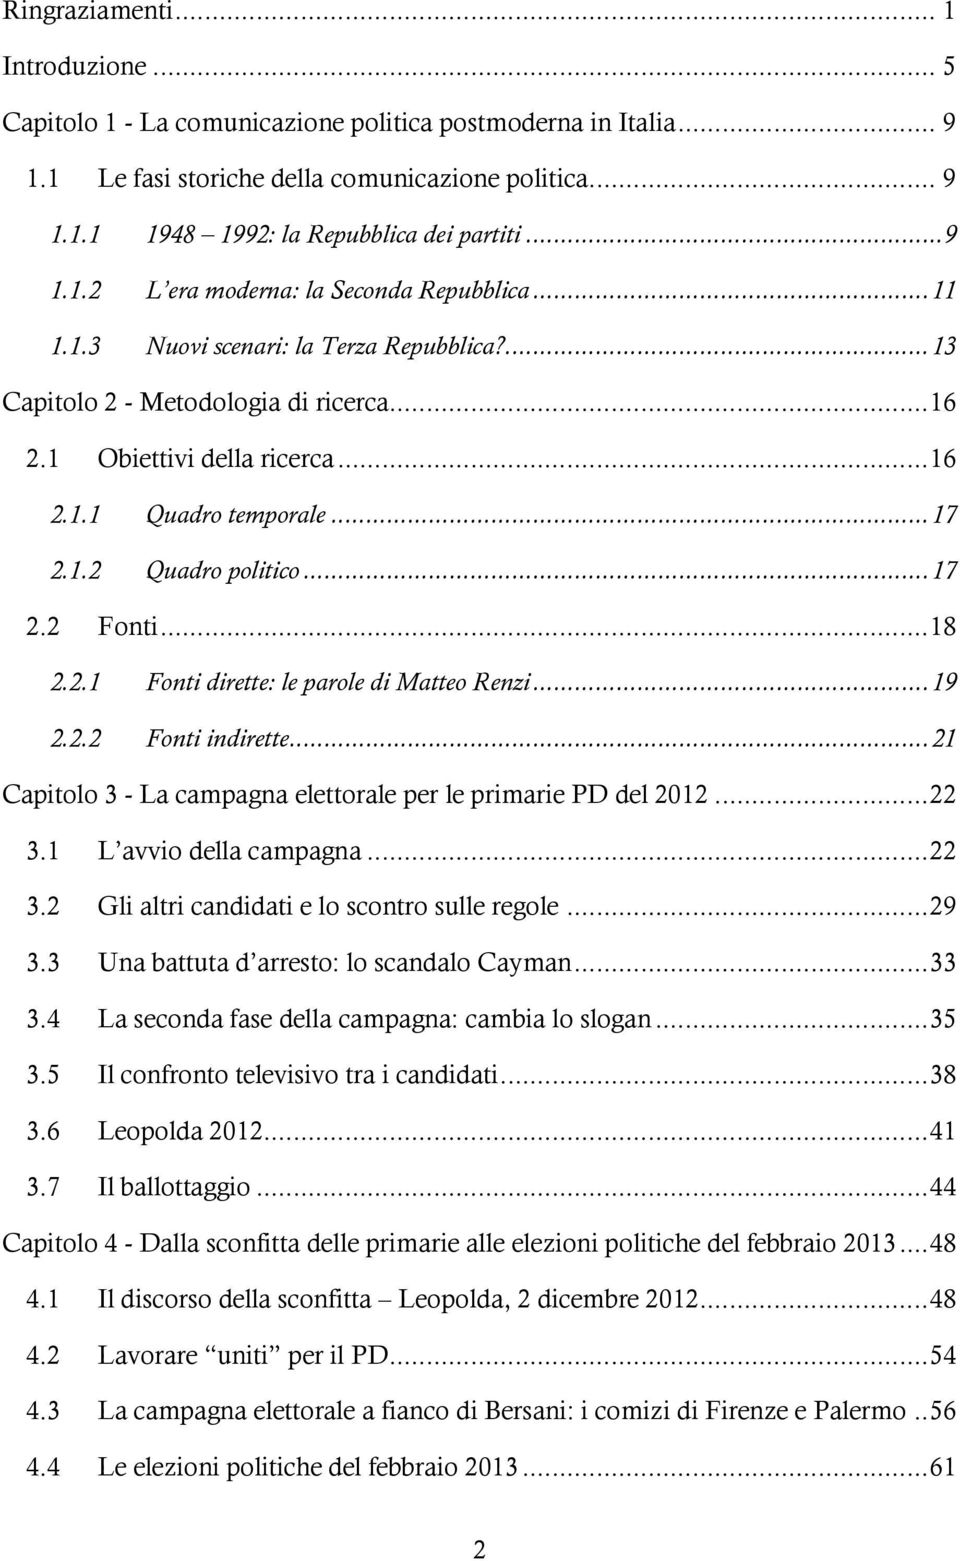 .. 17 2.1.2 Quadro politico... 17 2.2 Fonti... 18 2.2.1 Fonti dirette: le parole di Matteo Renzi... 19 2.2.2 Fonti indirette... 21 Capitolo 3 - La campagna elettorale per le primarie PD del 2012.